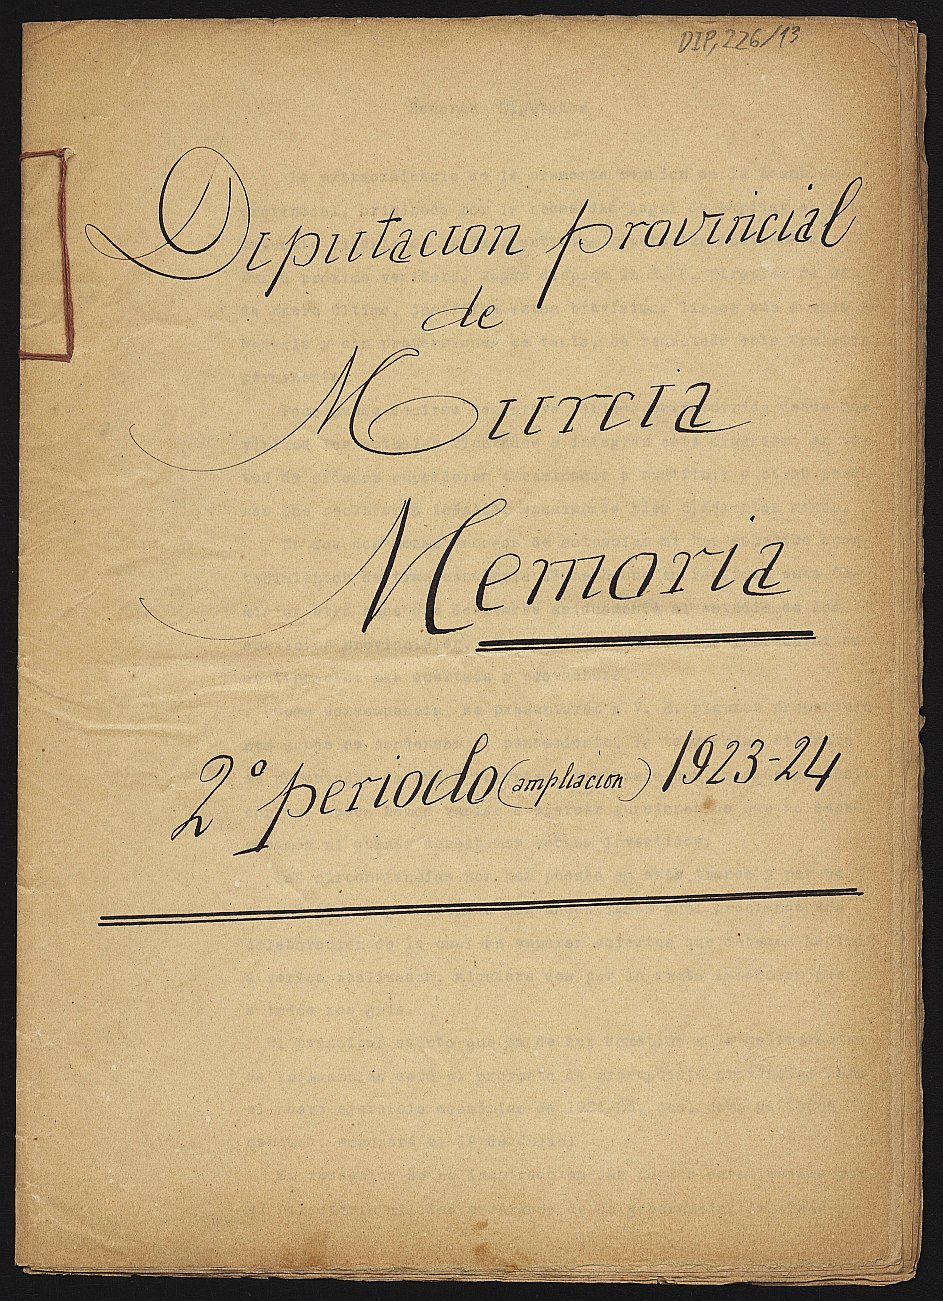 Memoria de la Comisión Provincial: ampliación del segundo periodo de 1923-1924.